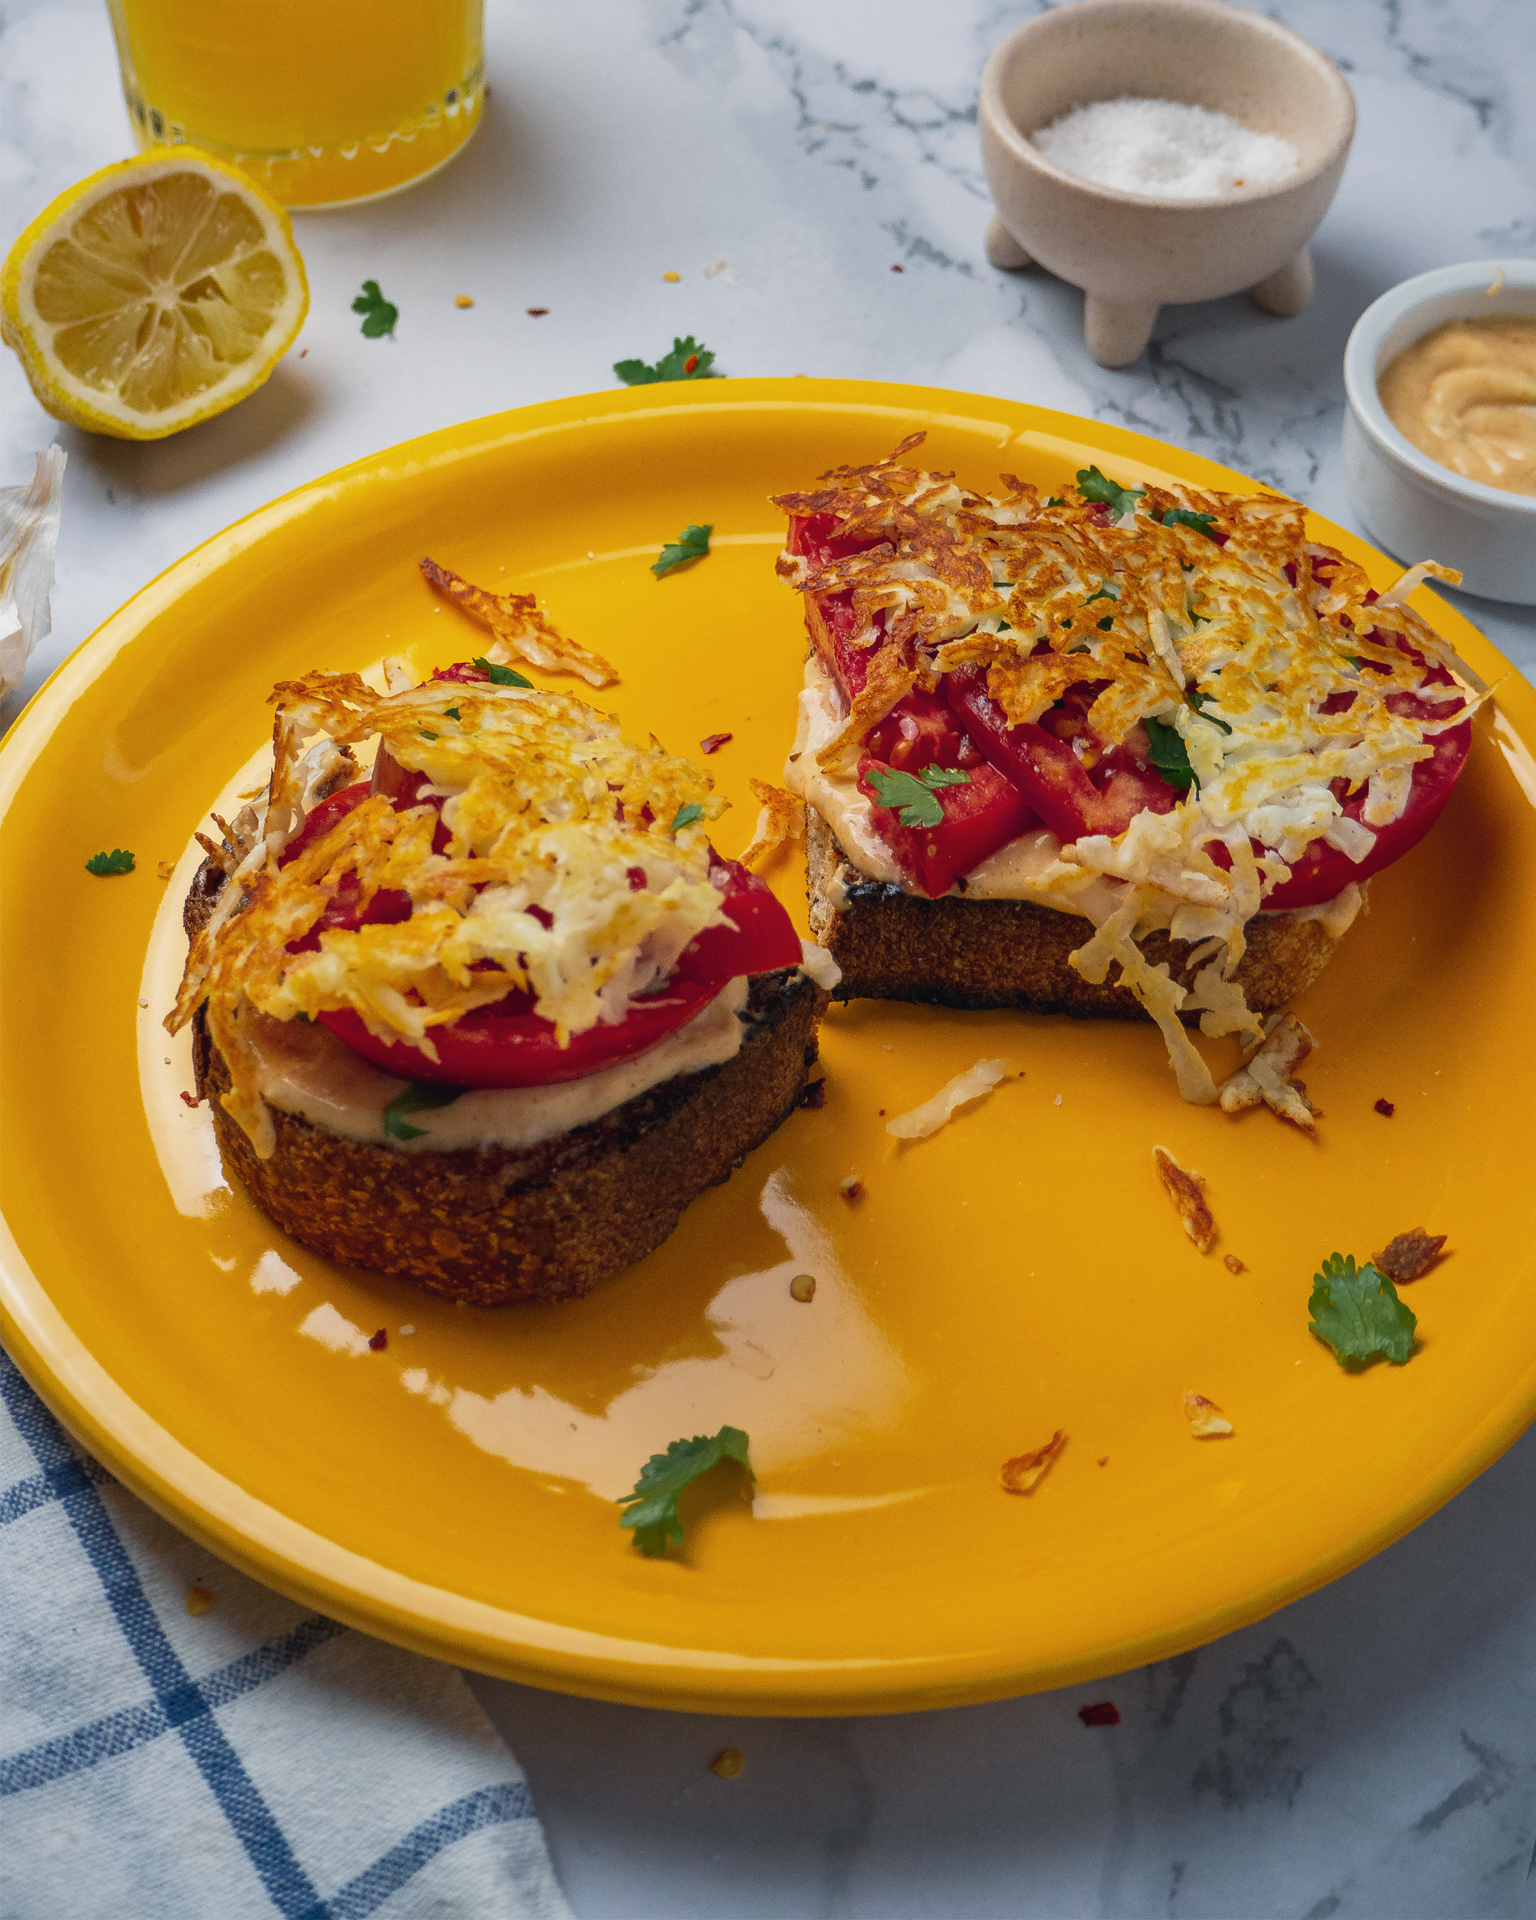 Μια κυριλάτη εκδοχή του κλασικού νοτιοαμερικάνικου tomato toast, με καπνιστή πάπρικα, μυρωδικά και ένα επικό τραγανό πλέγμα από χαλούμι.